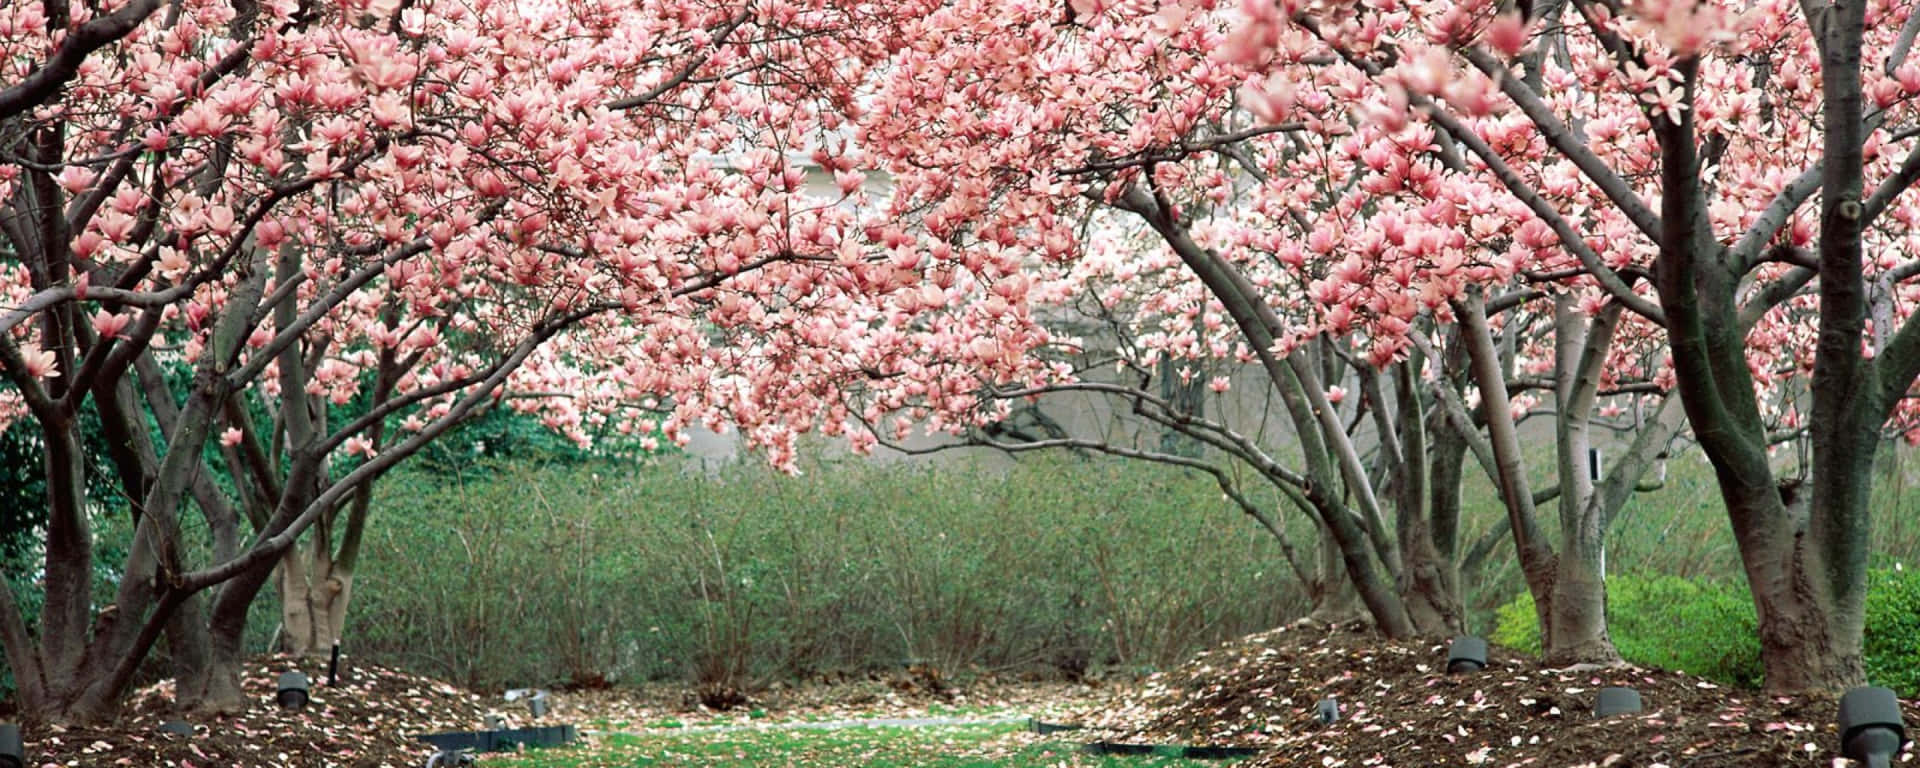 Frühlingsfrischegenießen Sie Die Schönheit Der Natur Mit Dual-monitor Wallpaper